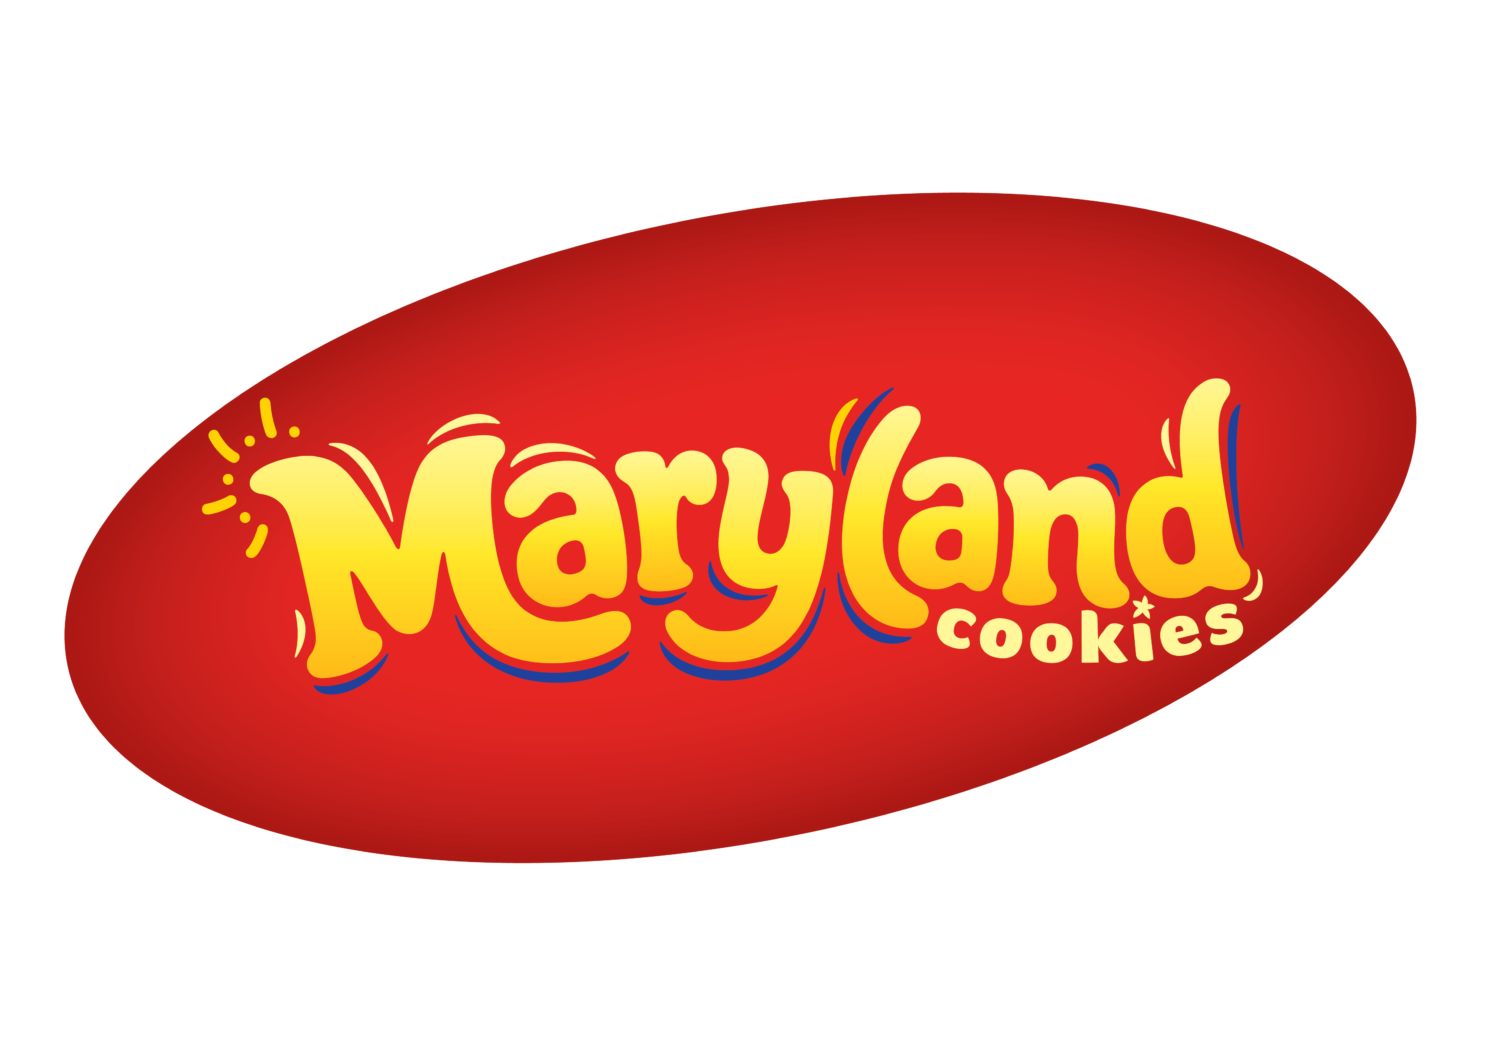 red maryland logo on white background